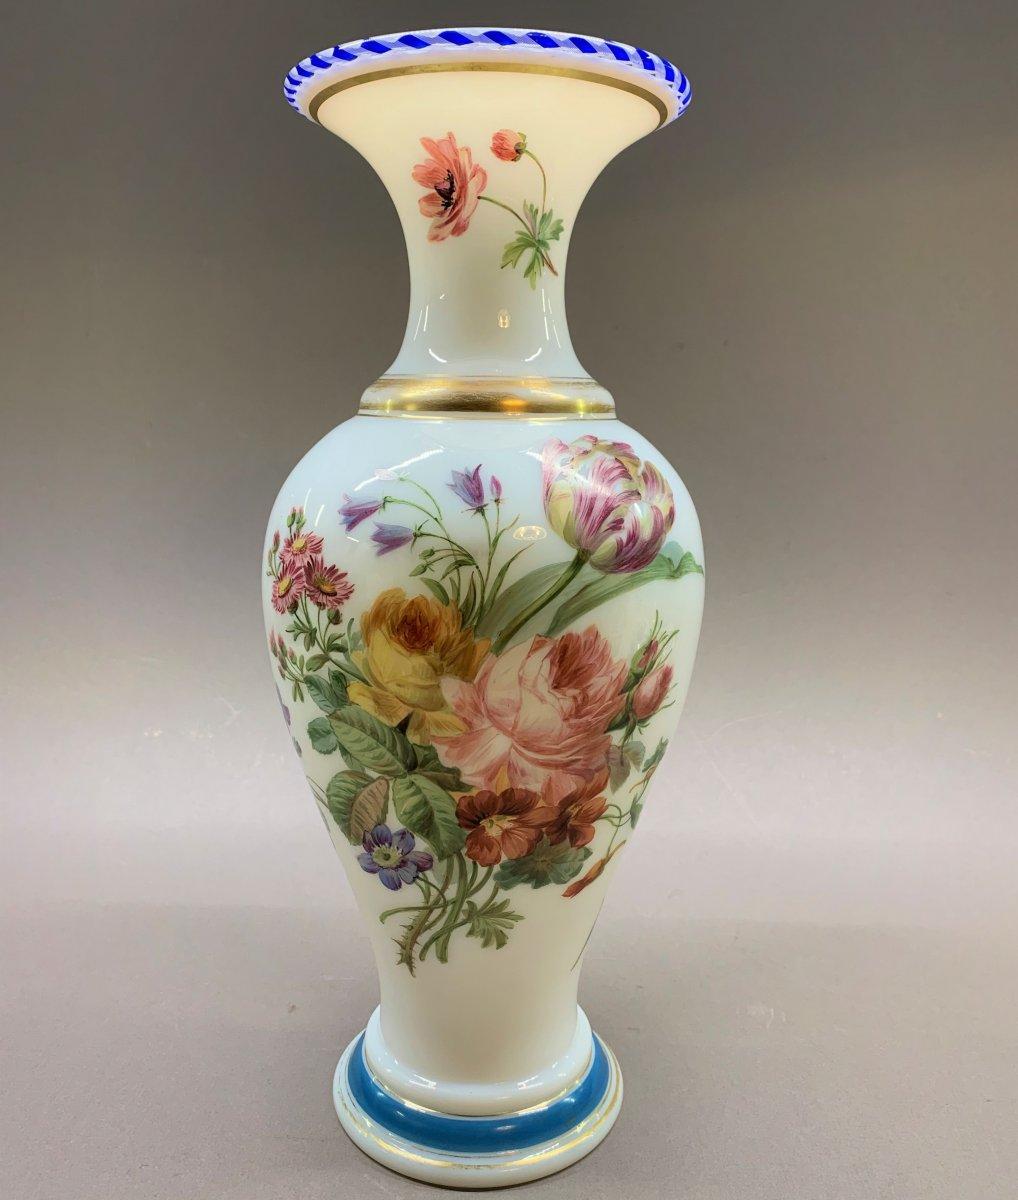 Vase en Opaline de Baccarat
Magnifique vase en opaline de Baccarat du XIXème siècle,
Période Louis-Philippe,
Décor émaillé par les ateliers de Jean-François Robert.
Dimensions : H : 35cm, d : 14,8cm

réf : 3357